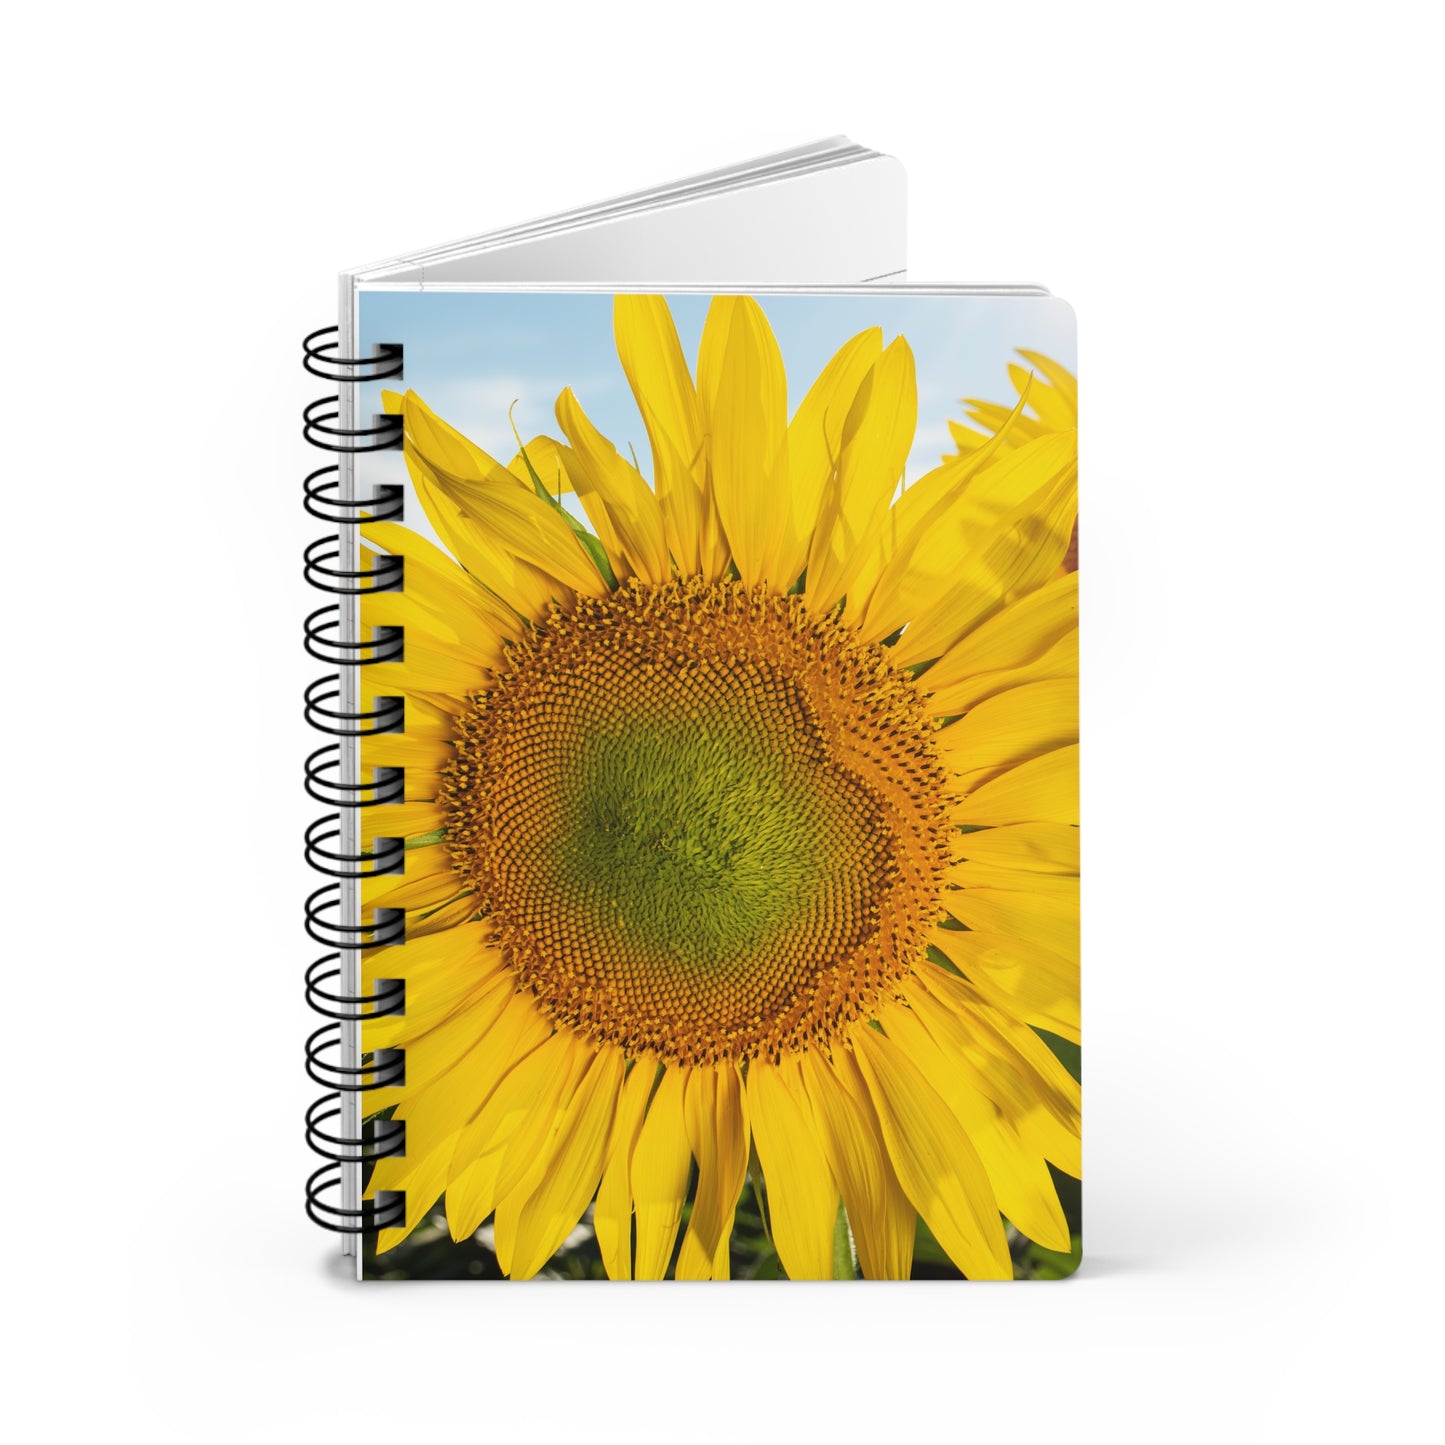 Sunflowers 02 - Spiral Bound Journal One Size